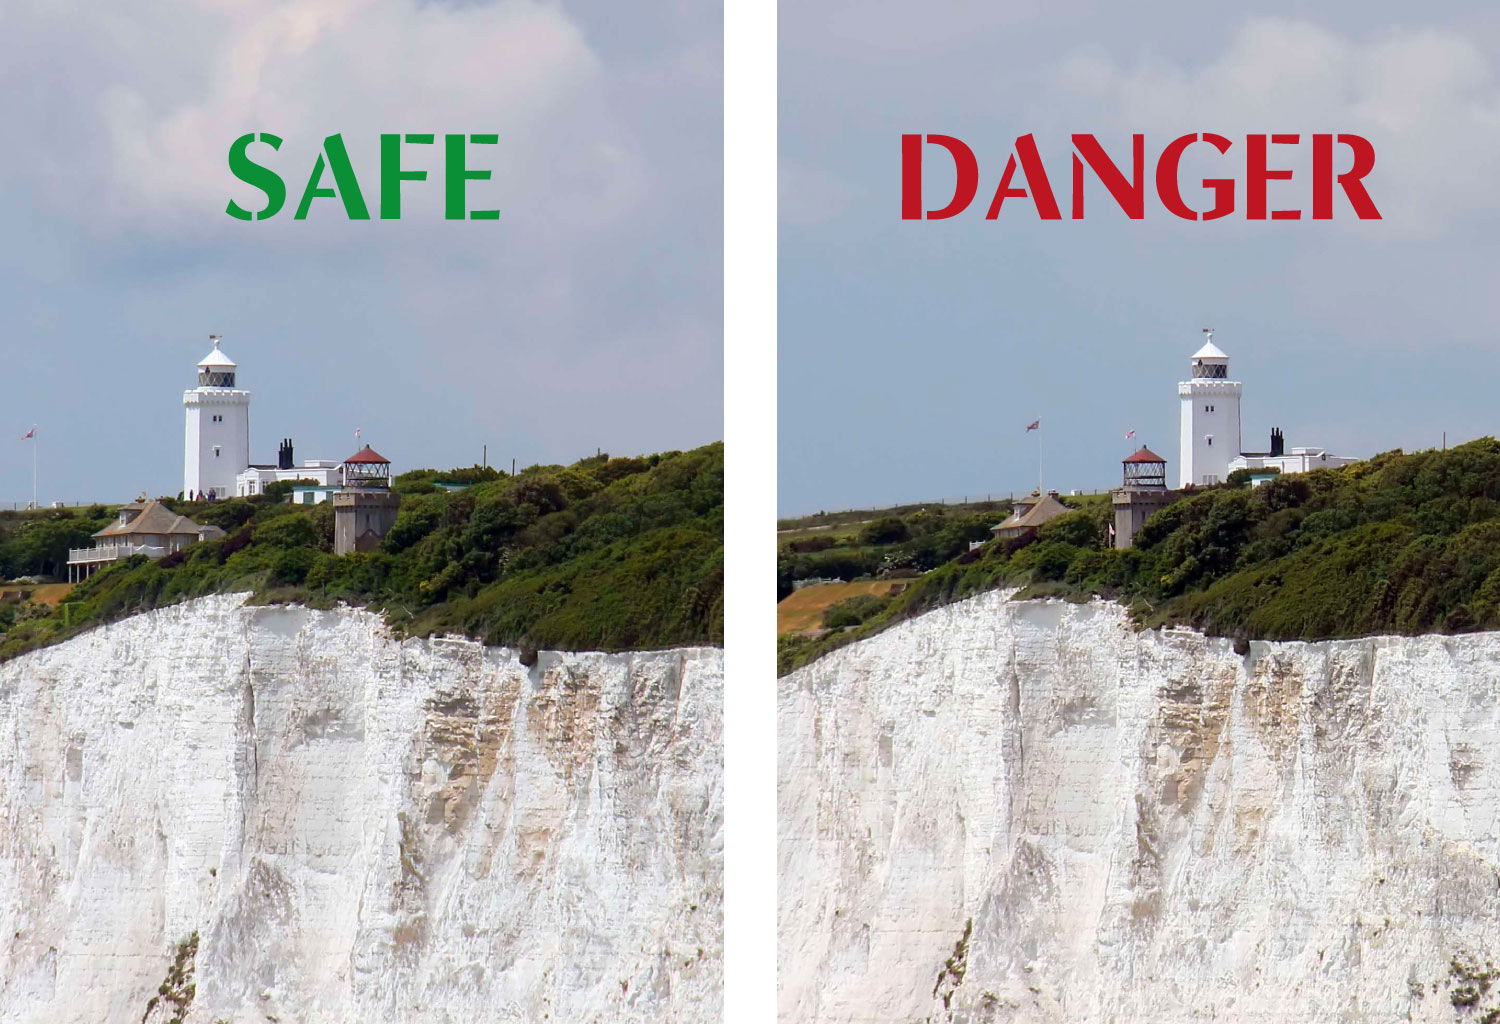 Safe or Danger?